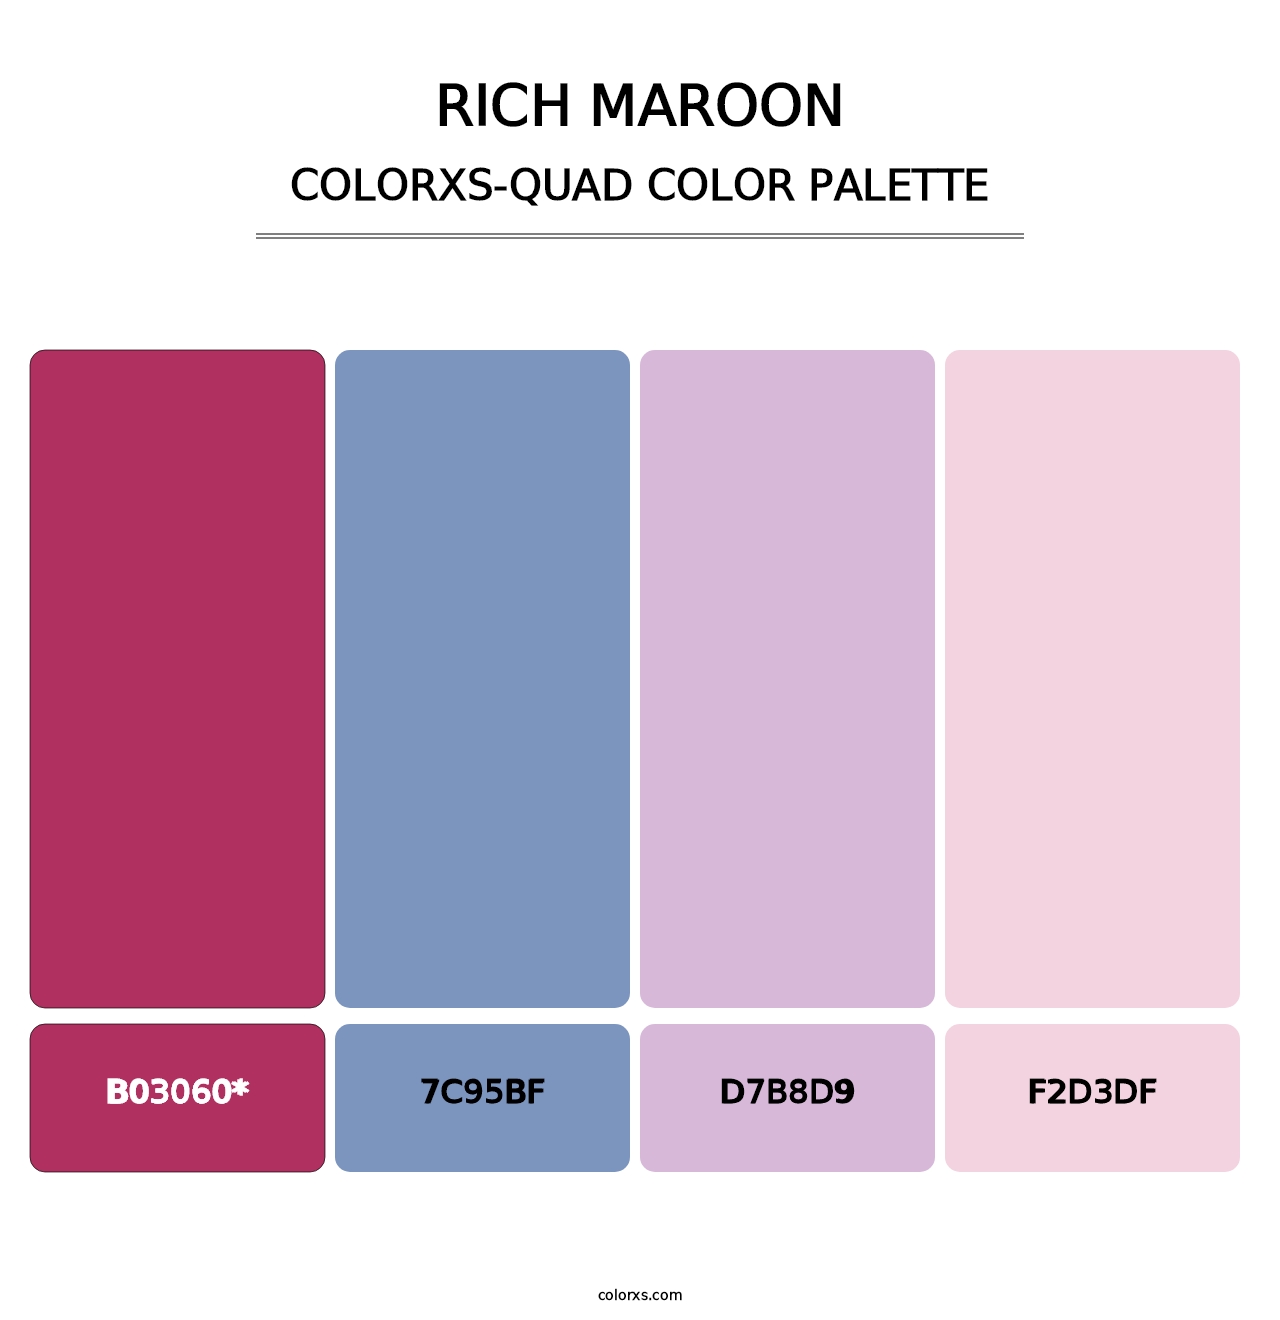 Rich Maroon - Colorxs Quad Palette